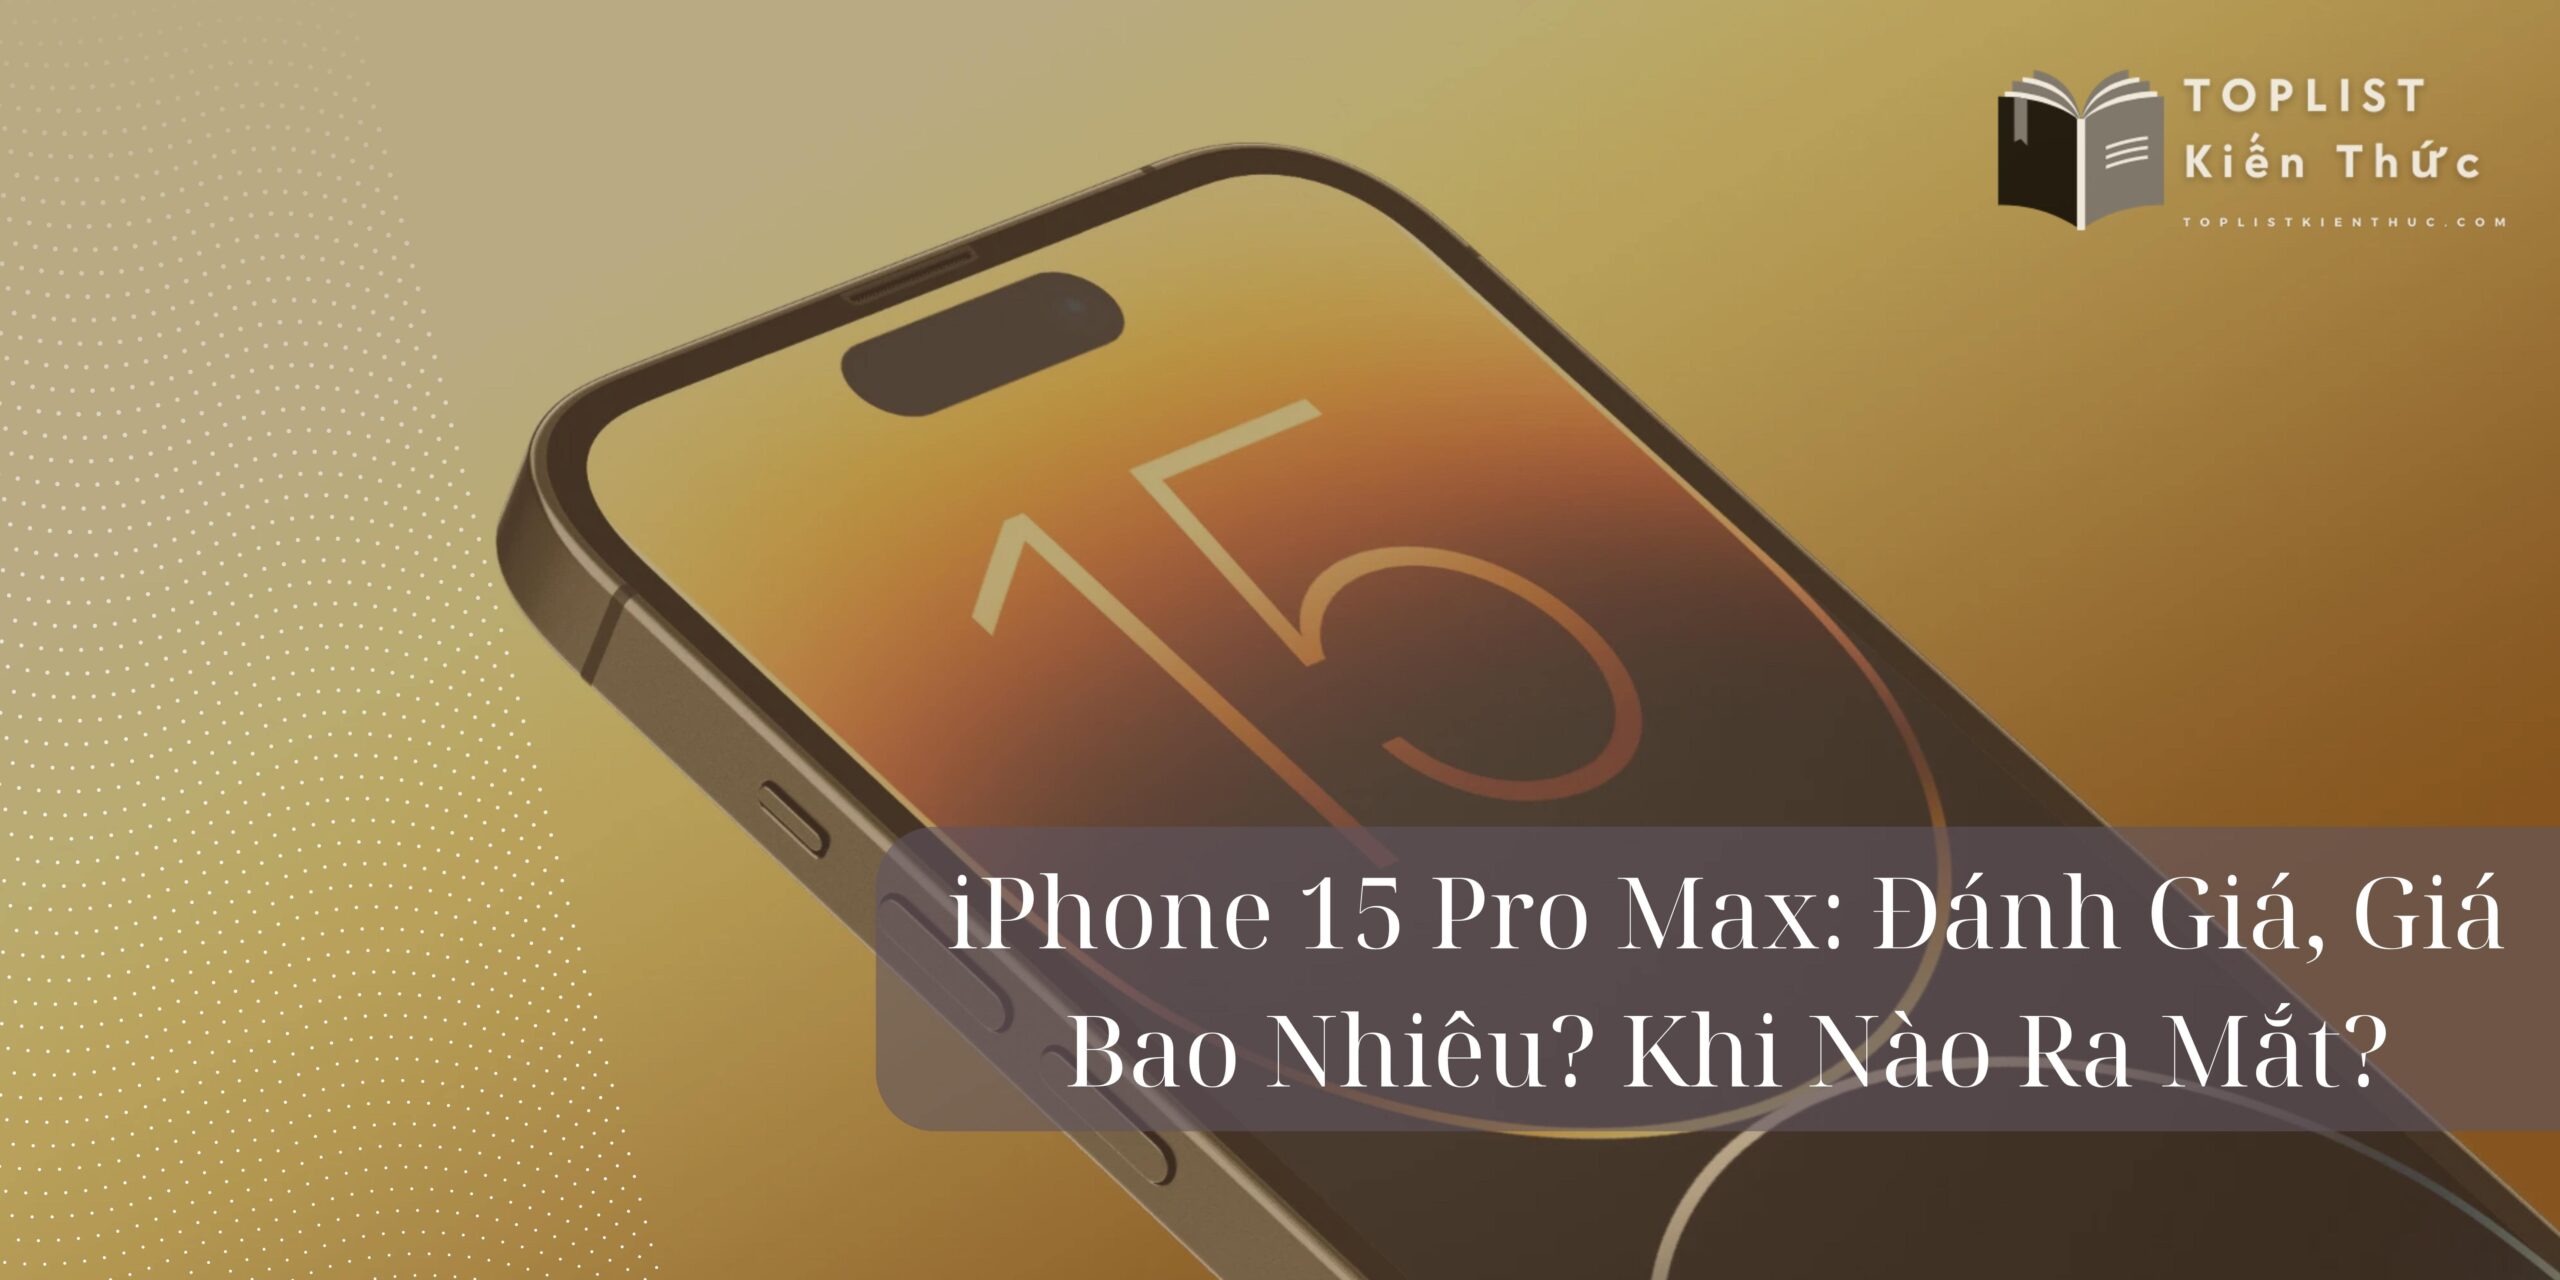 iPhone 15 Pro Max: Đánh Giá, Giá Bao Nhiêu? Khi Nào Ra Mắt?